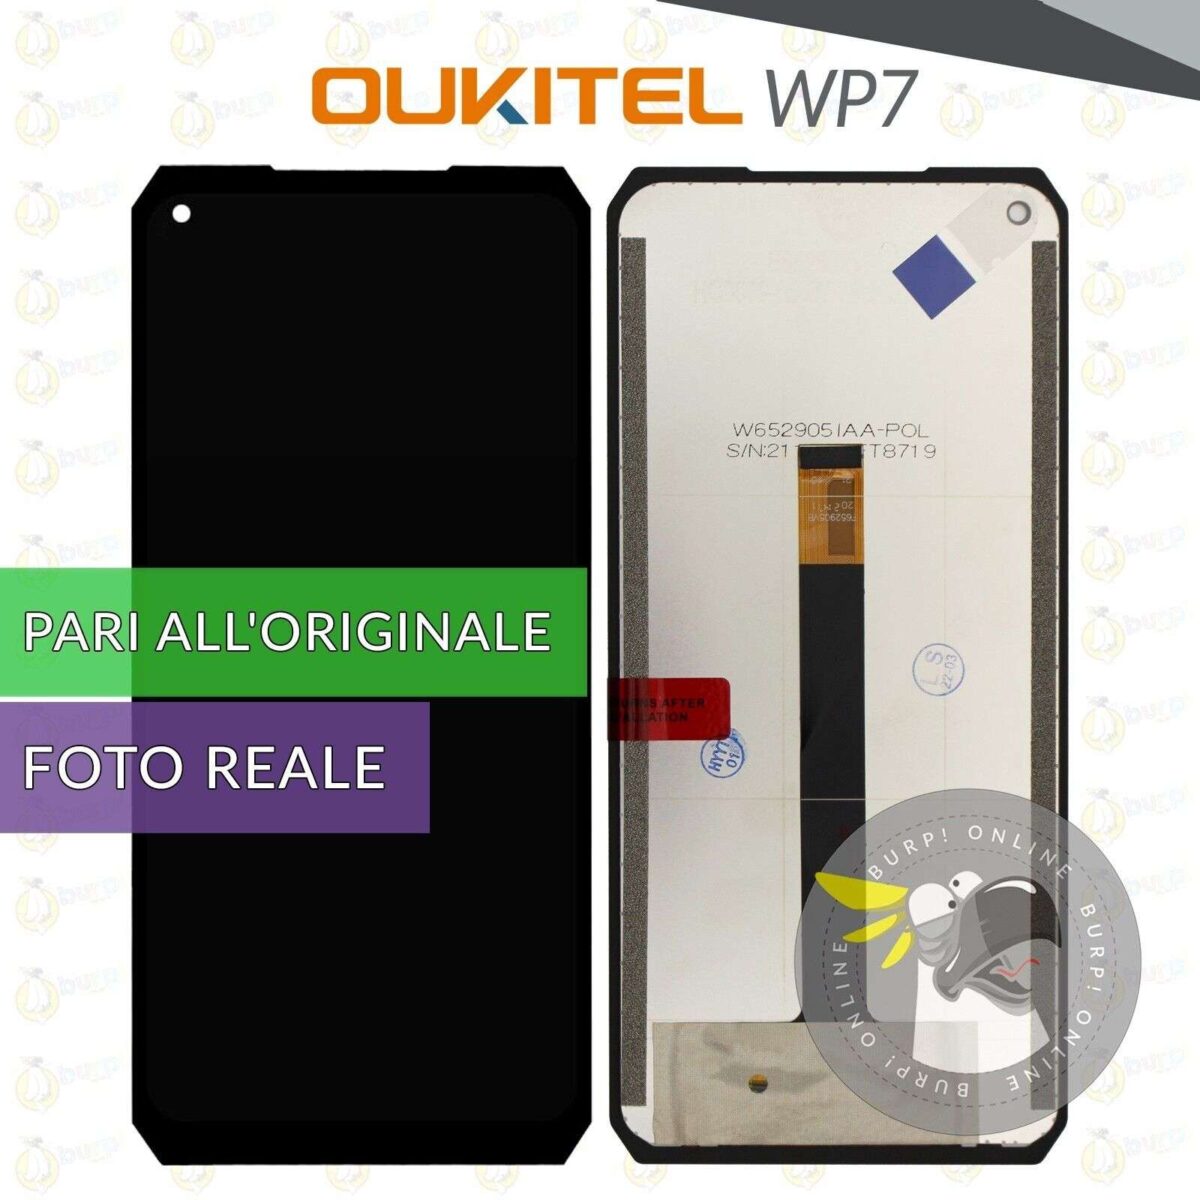 DISPLAY OUKITEL WP7 SCHERMO LCD VETRO TOUCH SCREEN PARI ALLORIGINALE 235057729045